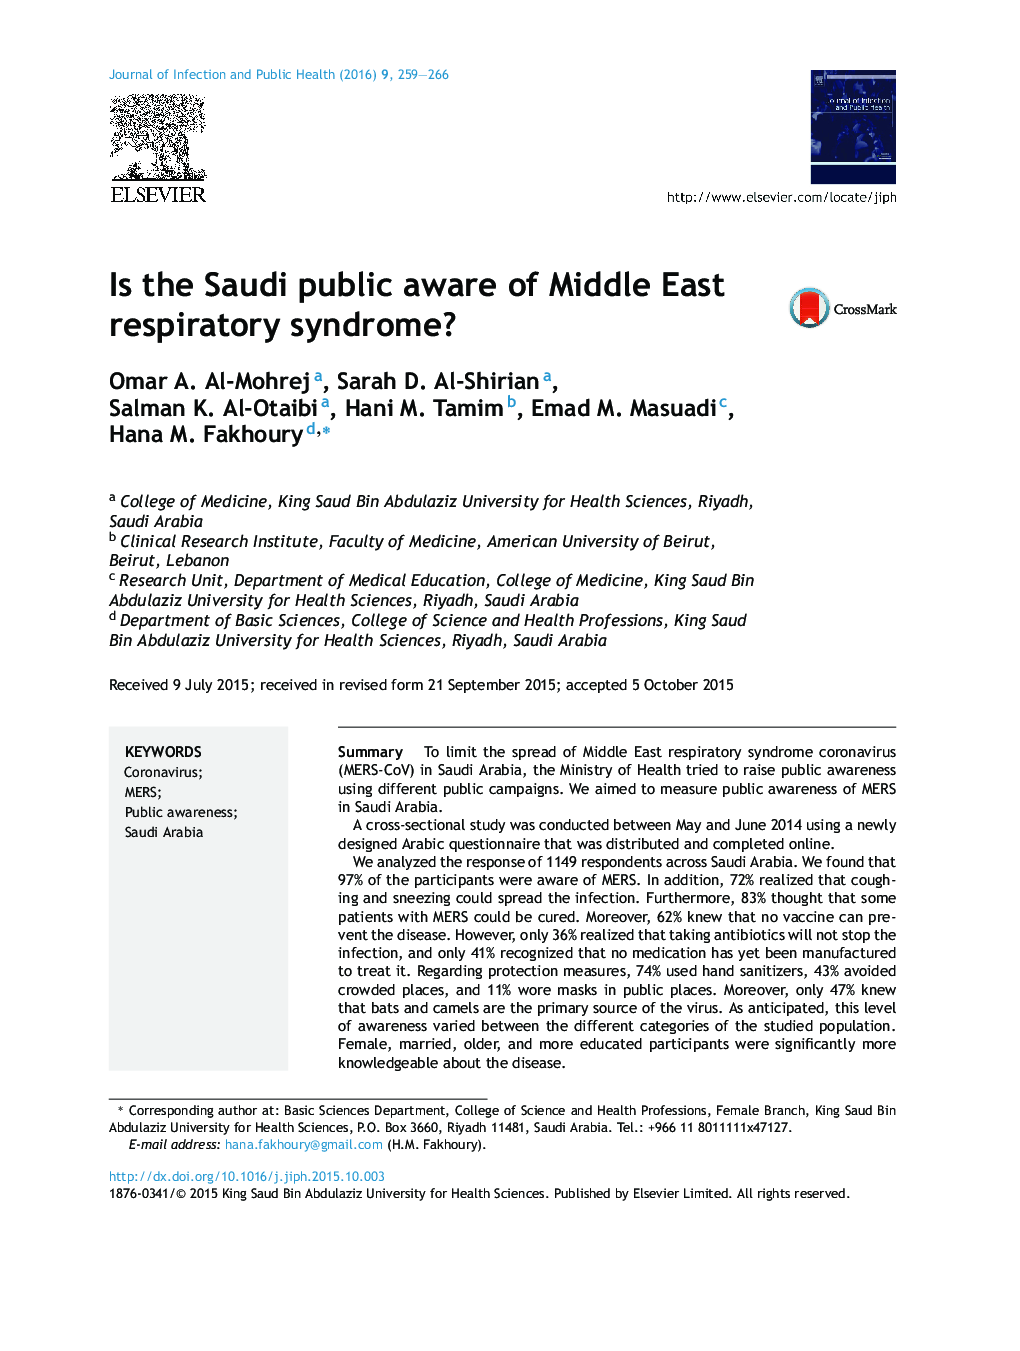 آیا مردم عربستان از سندرم تنفسی شرق میانه آگاهی دارند؟